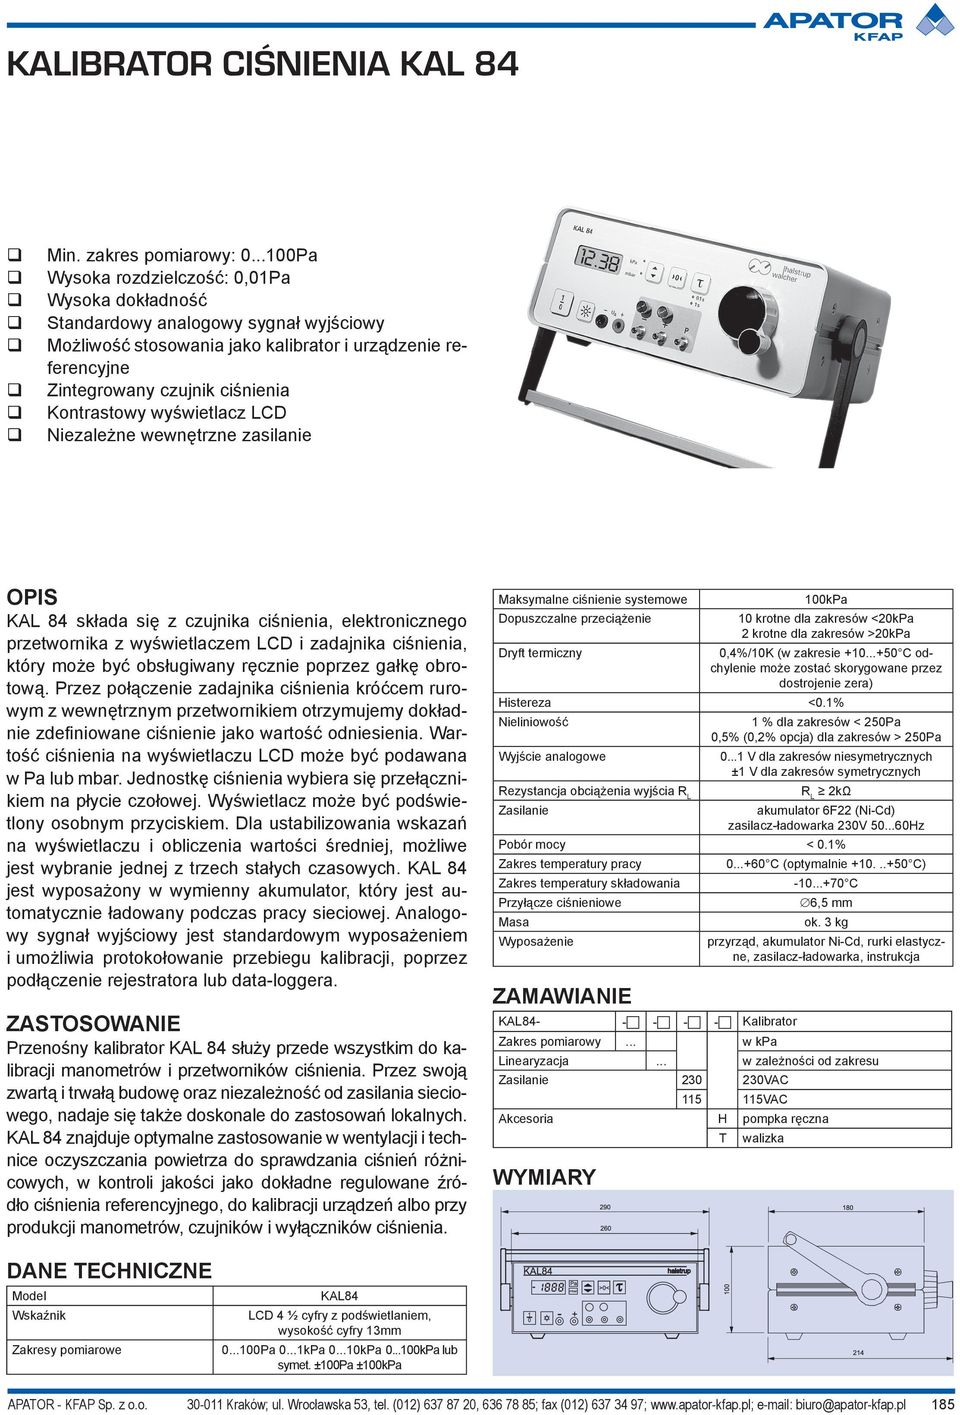 Kontrastowy wyświetlacz LCD Niezależne wewnętrzne zasilanie KAL 84 składa się z czujnika ciśnienia, elektronicznego przetwornika z wyświetlaczem LCD i zadajnika ciśnienia, który może być obsługiwany